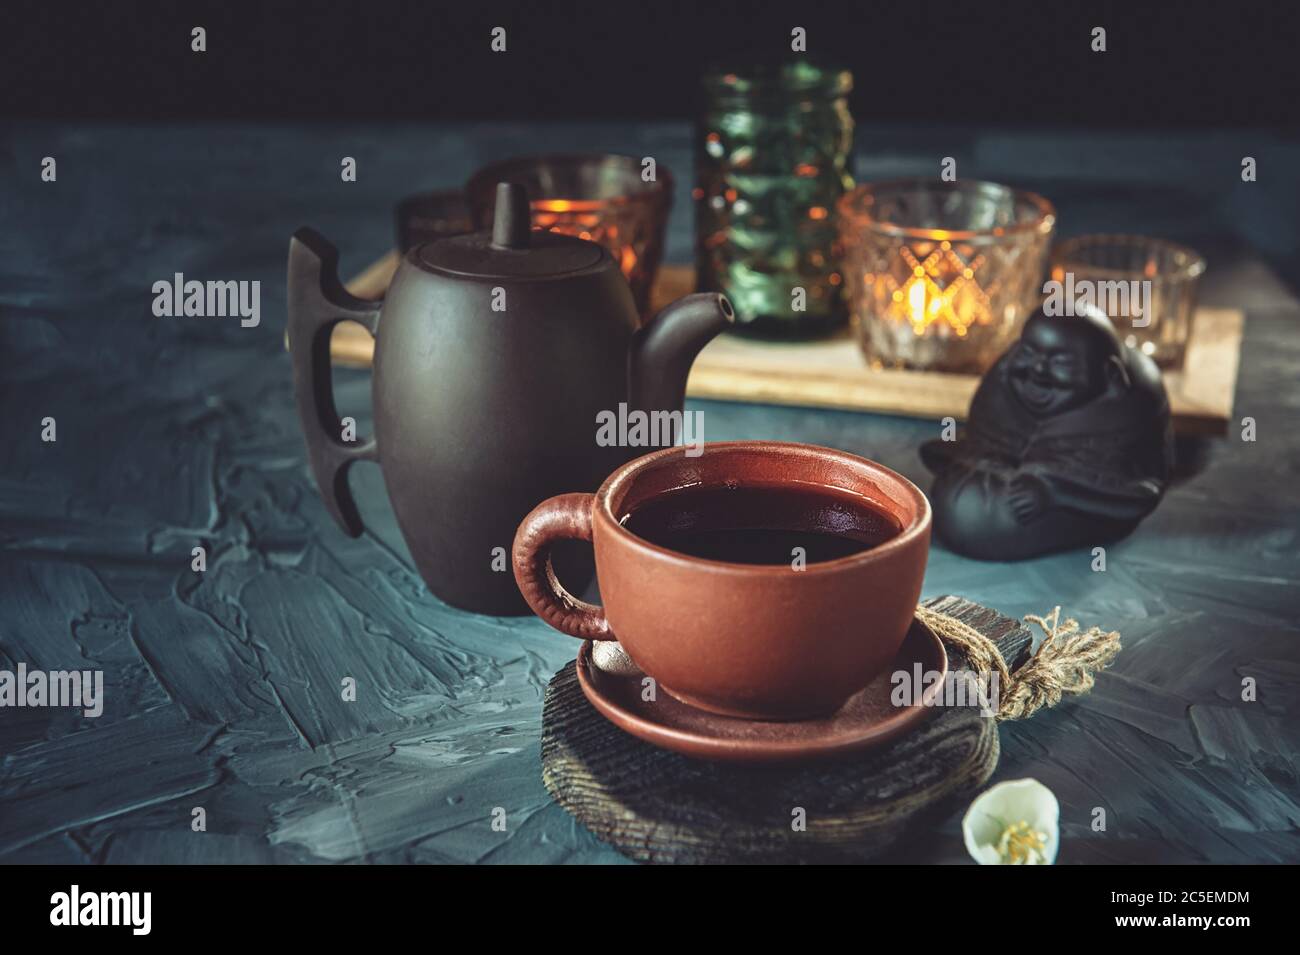 Cérémonie du thé chinois. Thé chaud dans une tasse en céramique sur le fond de chandeliers avec bougies. Mise au point sélective. Banque D'Images